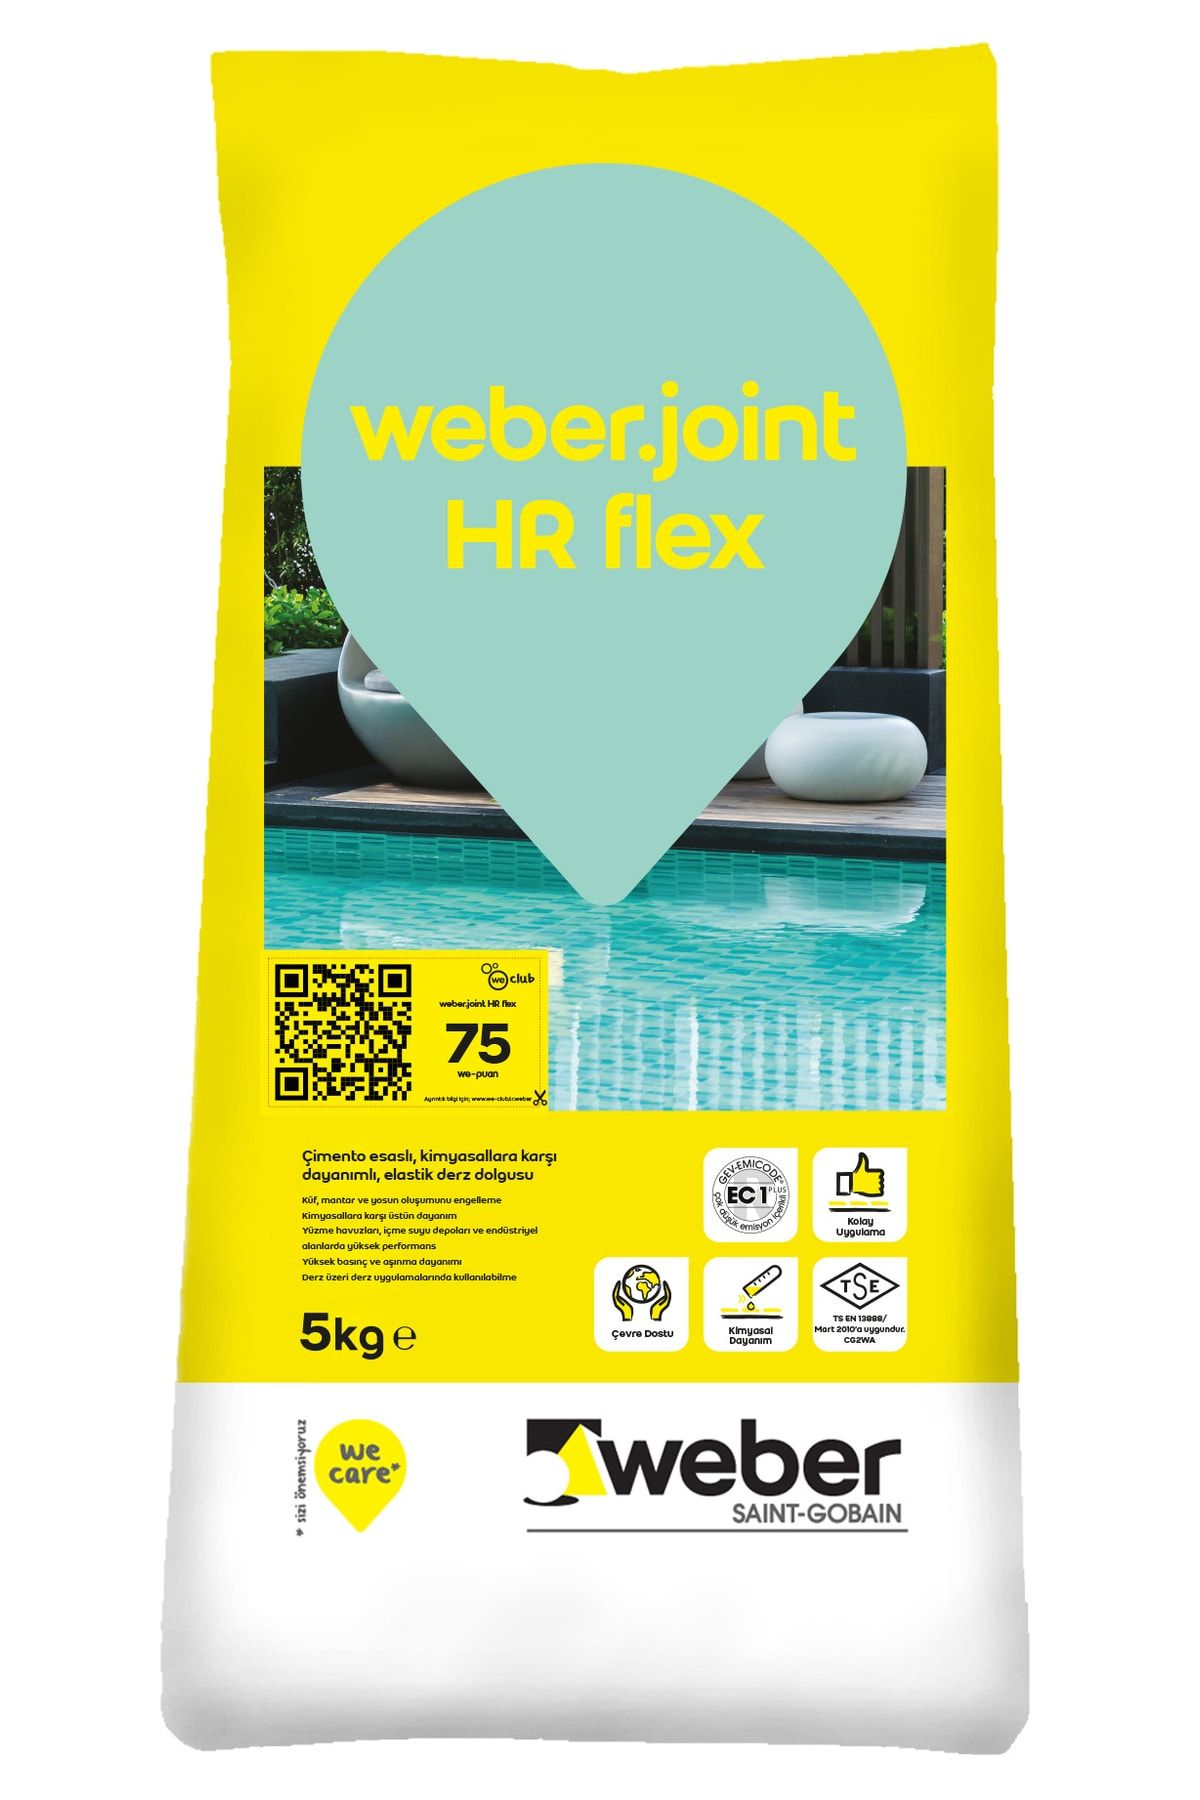 WEBER Joint Hr Flex Kimyasal Dayanımlı Derz Dolgu 5 Kg (beyaz)